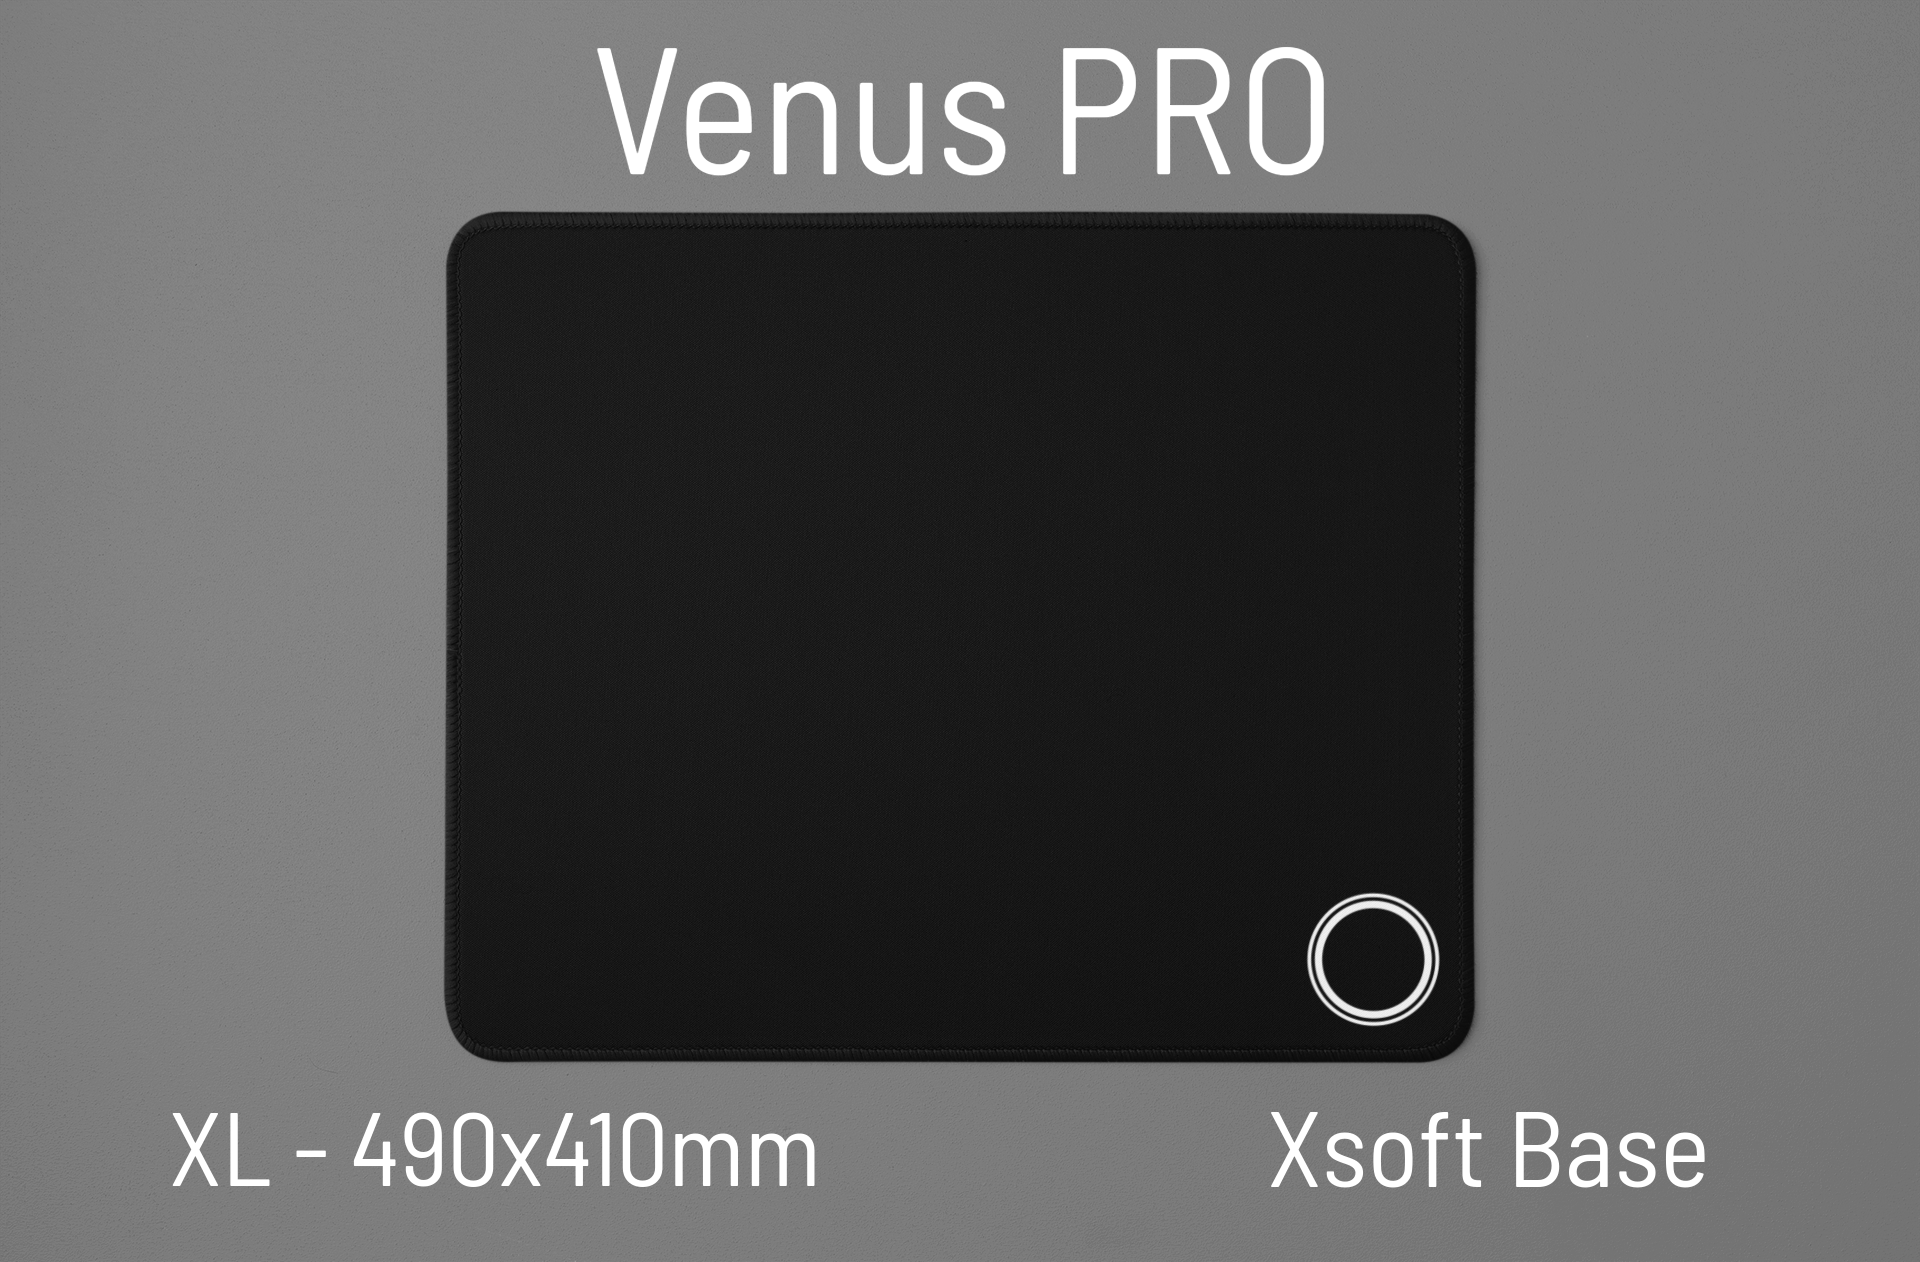 LGG Venus PRO - XL - Black